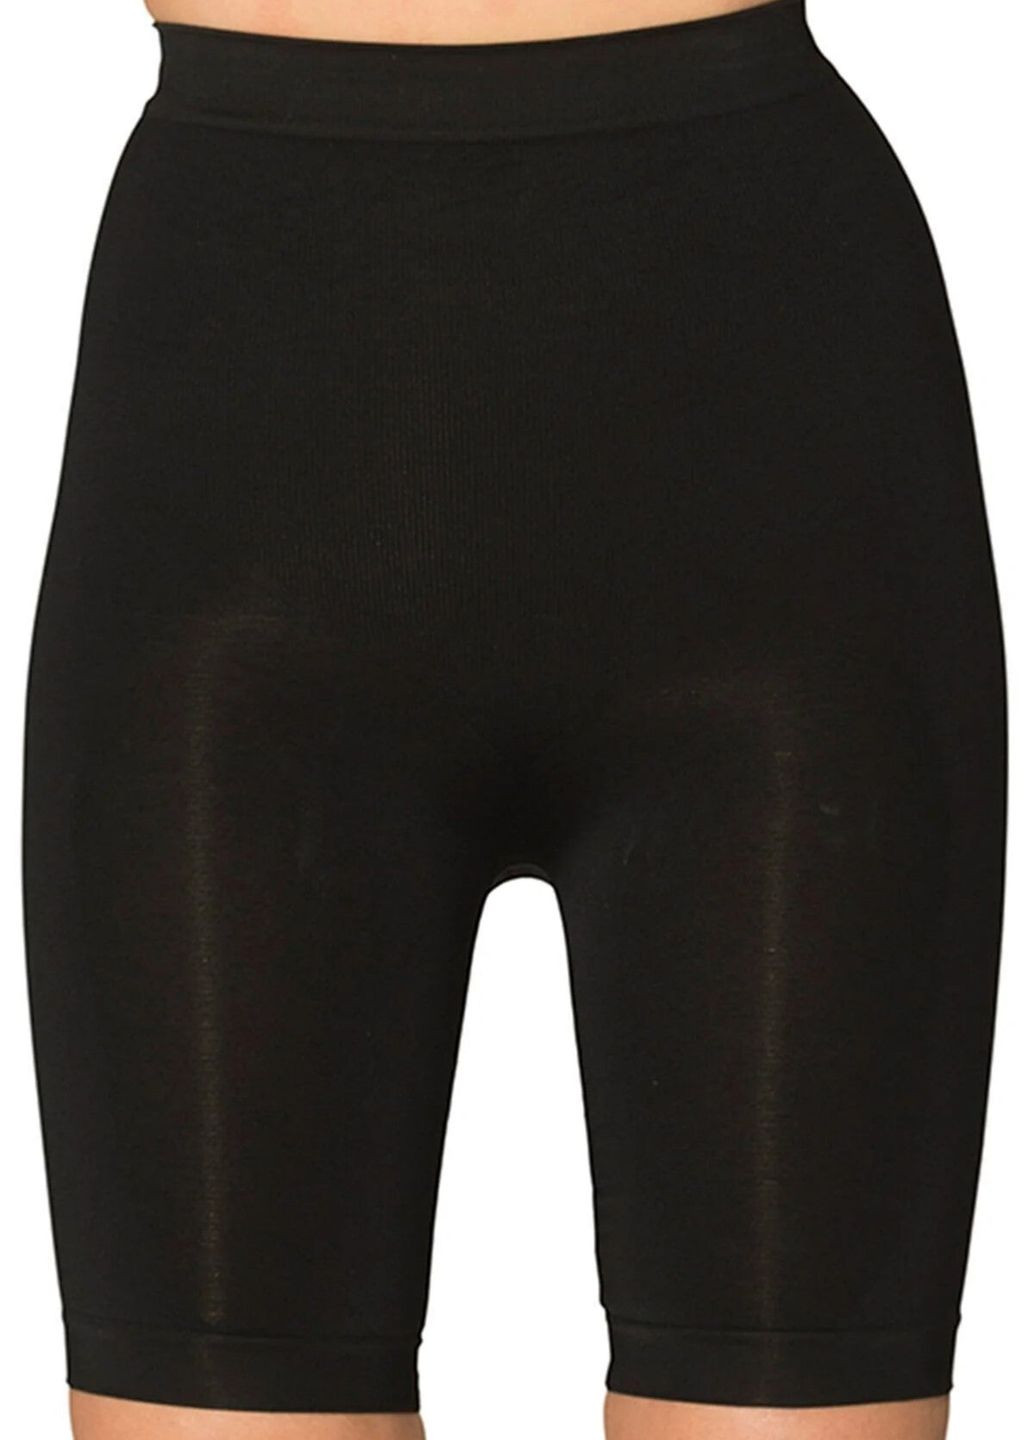 Корректирующие панталоны FORM ACTIVE 1010 black (263346005)